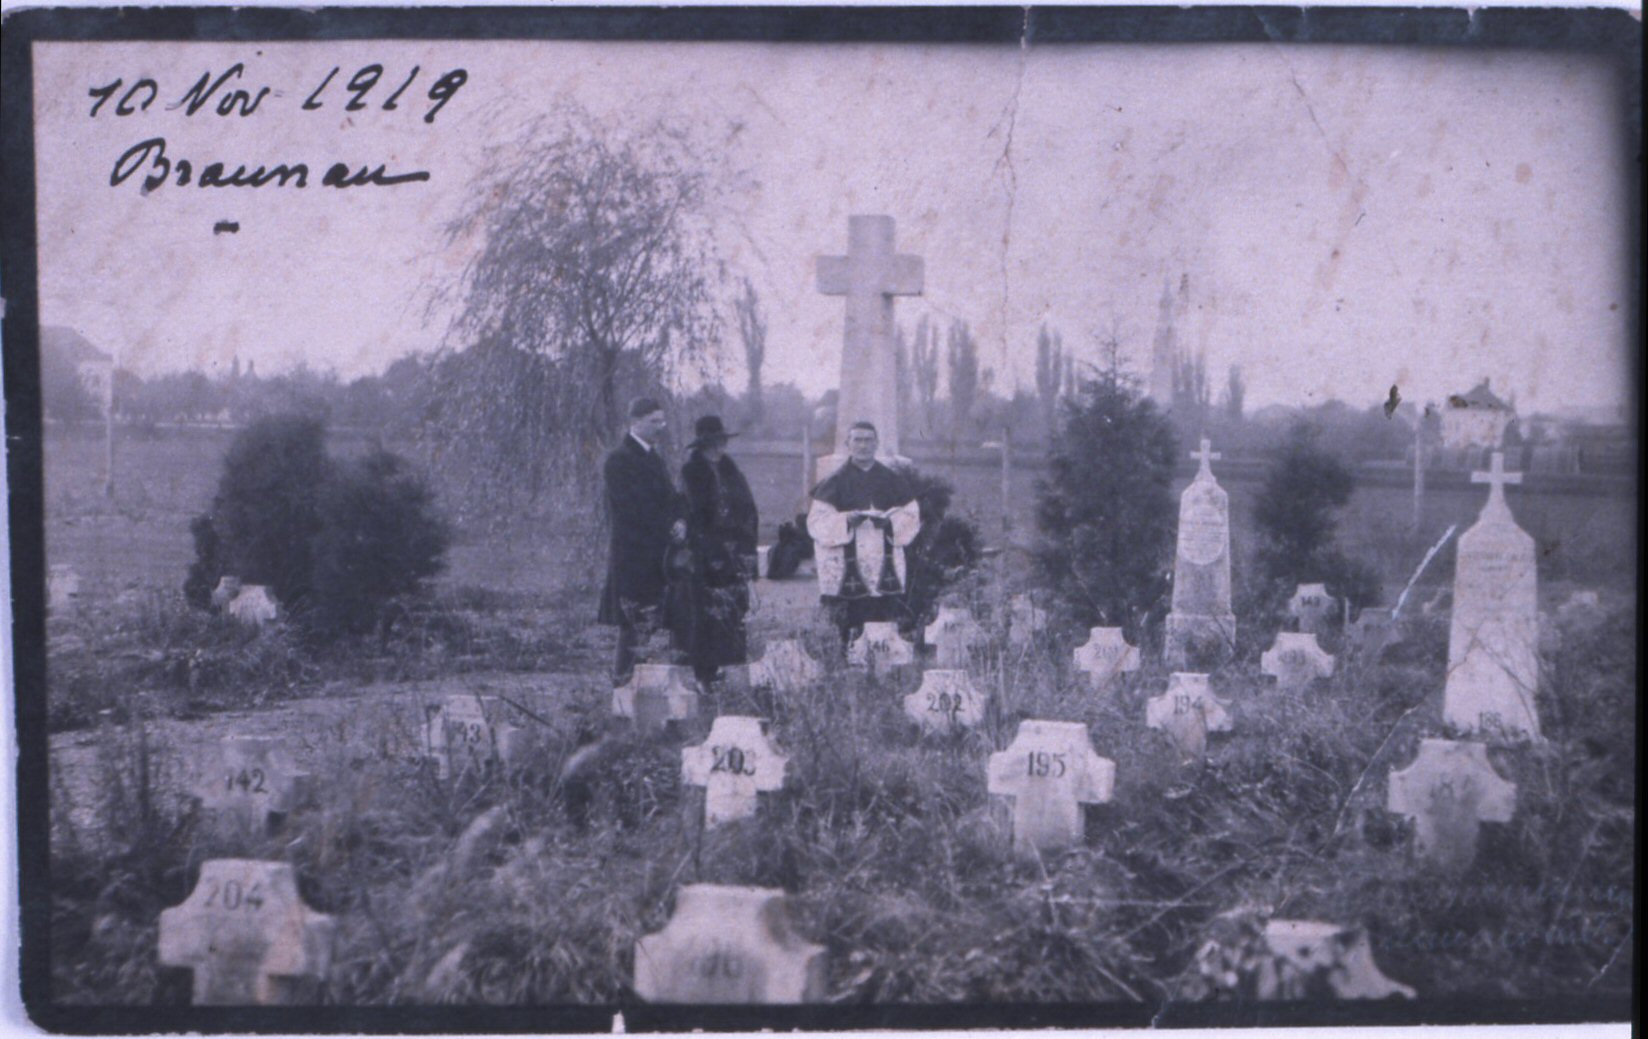 cimitero del campo profughi di braunau 1919